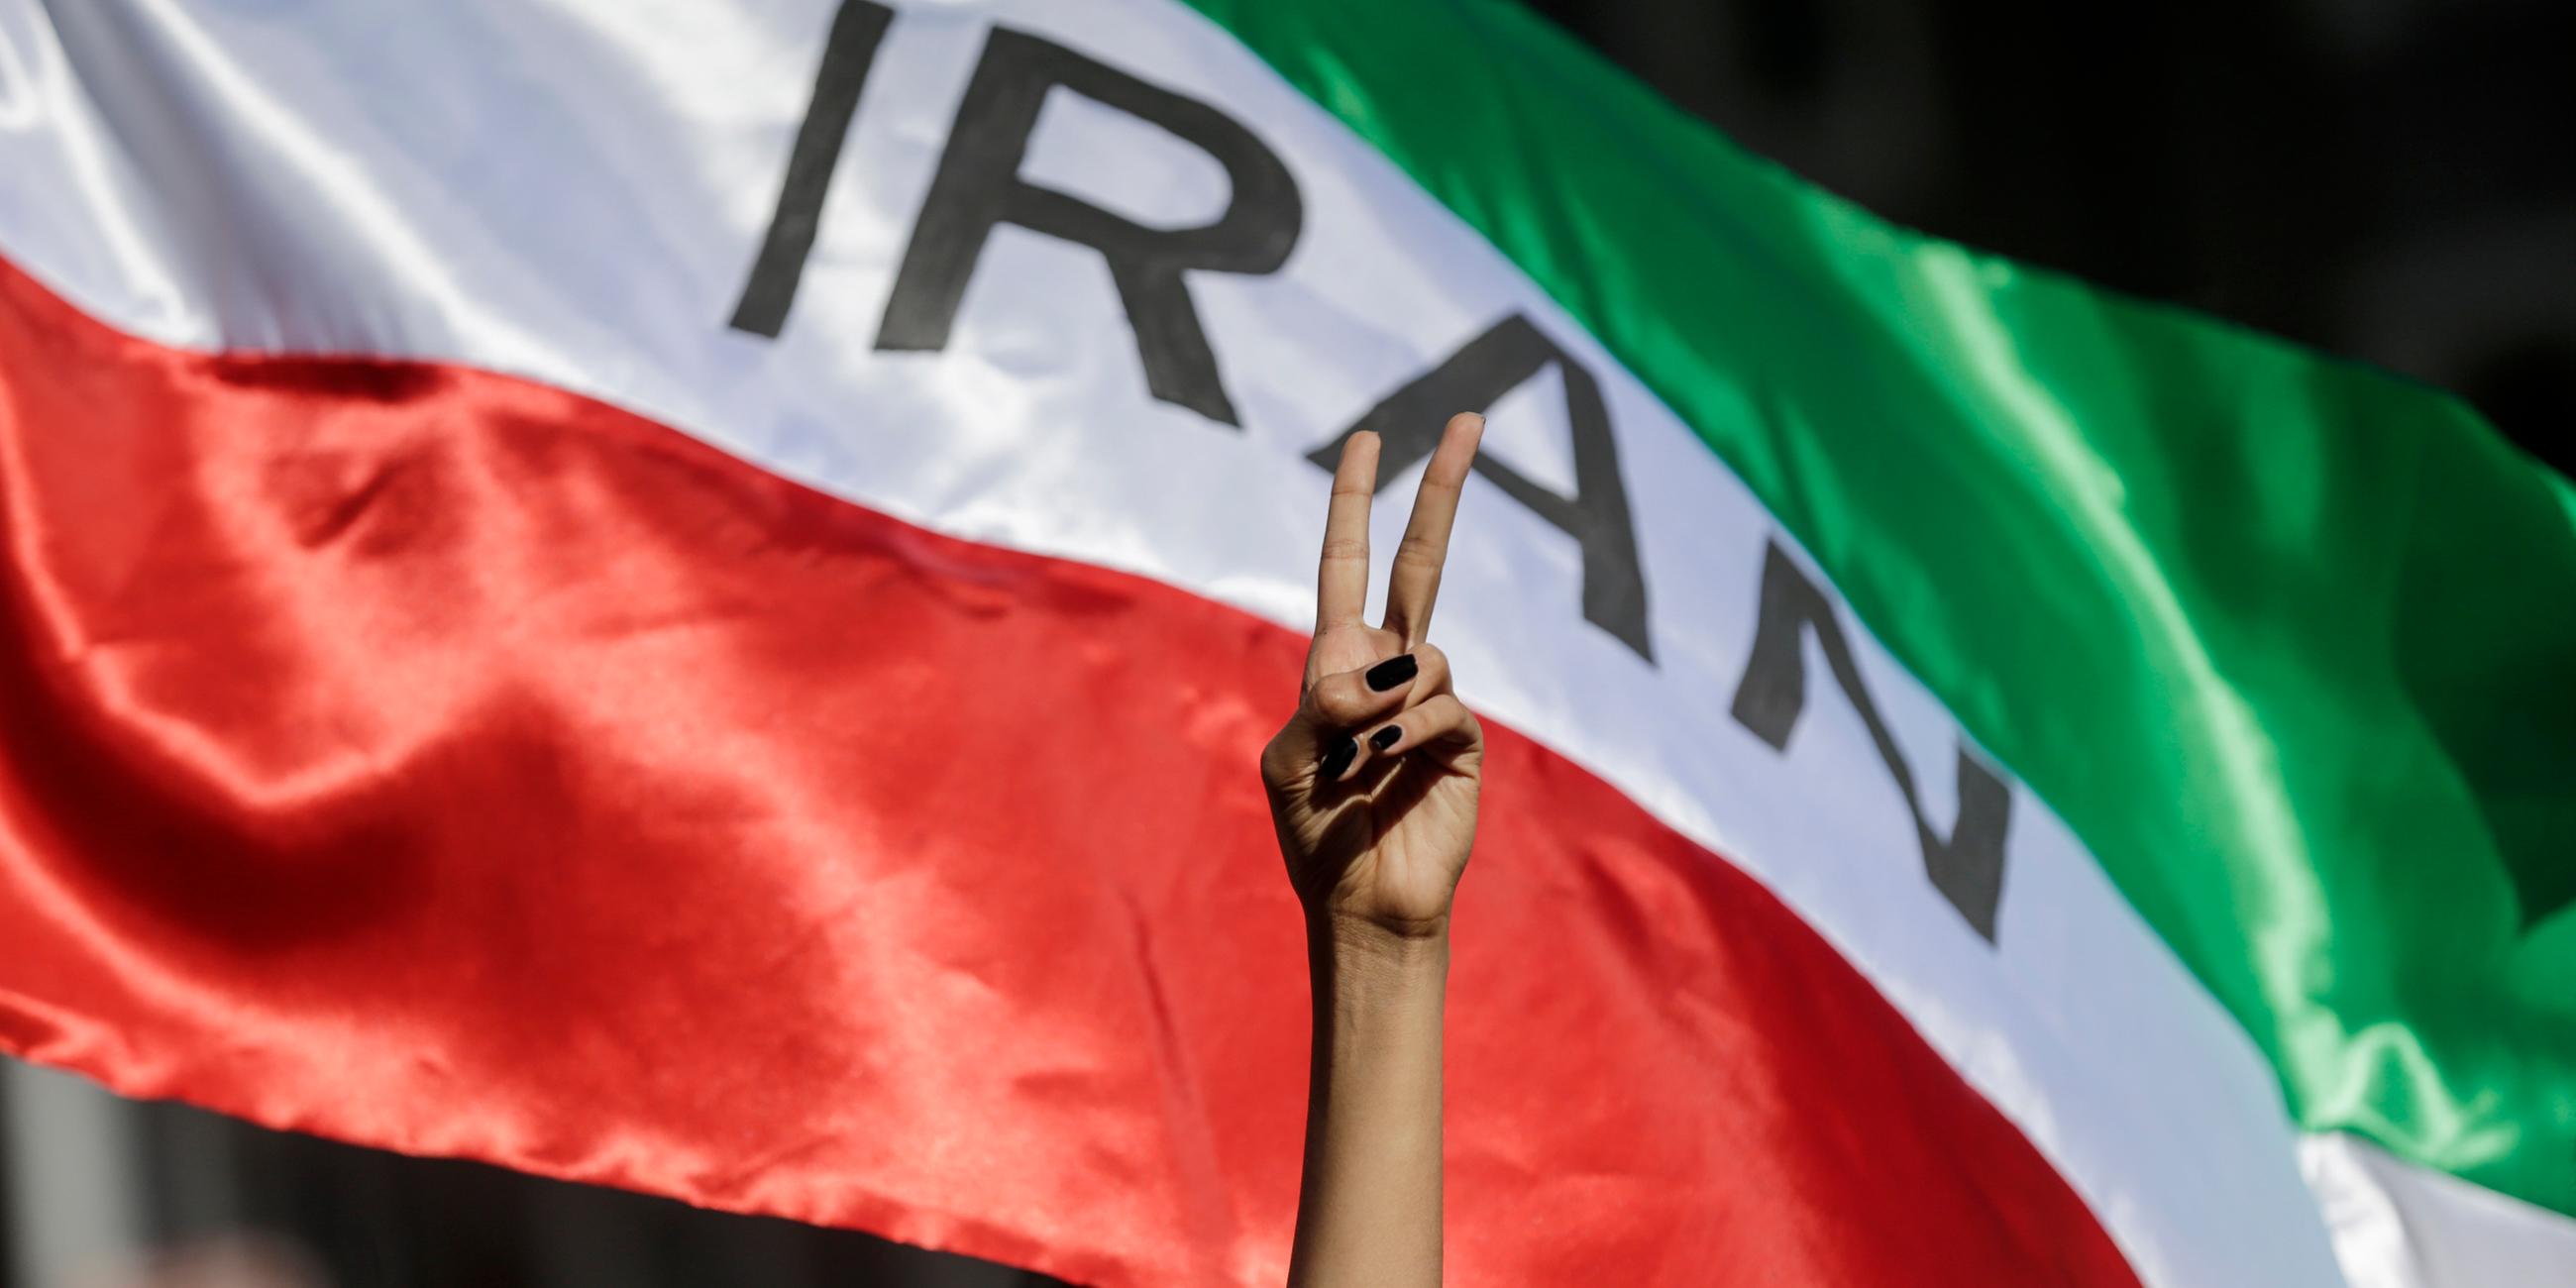 Italien, Rom: Eine Frau zeigt auf einer Demonstration iranischer Studenten für die Menschenrechte im Iran das Victory-Zeichen vor einer iranischen Fahne.